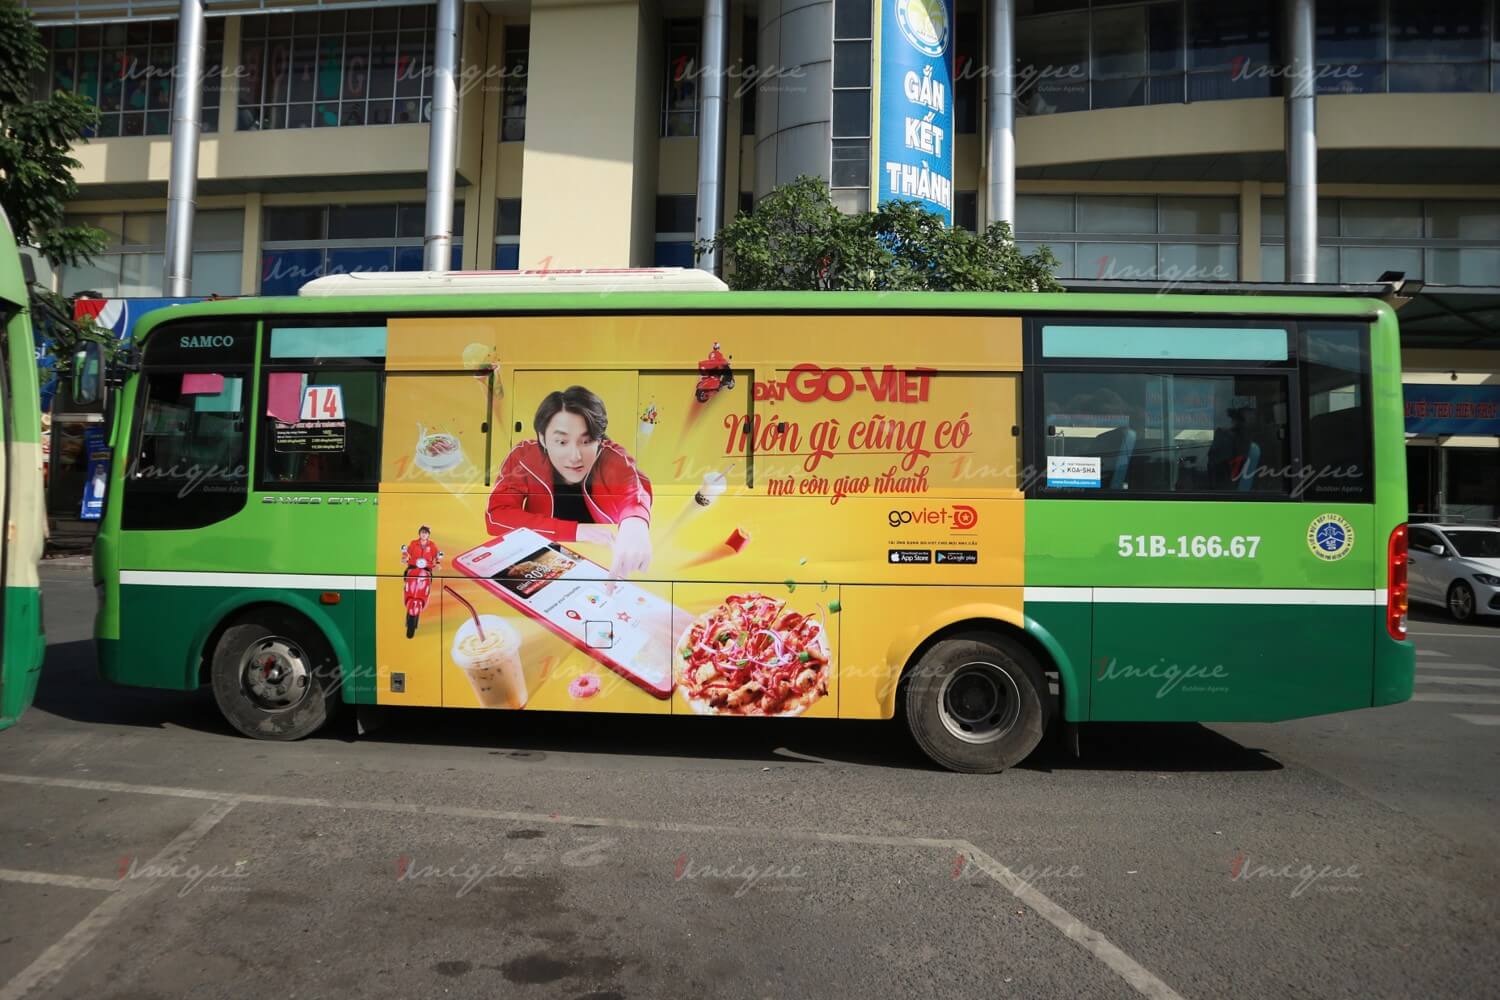 Quảng cáo trên xe bus tại TP.Hồ Chí Minh